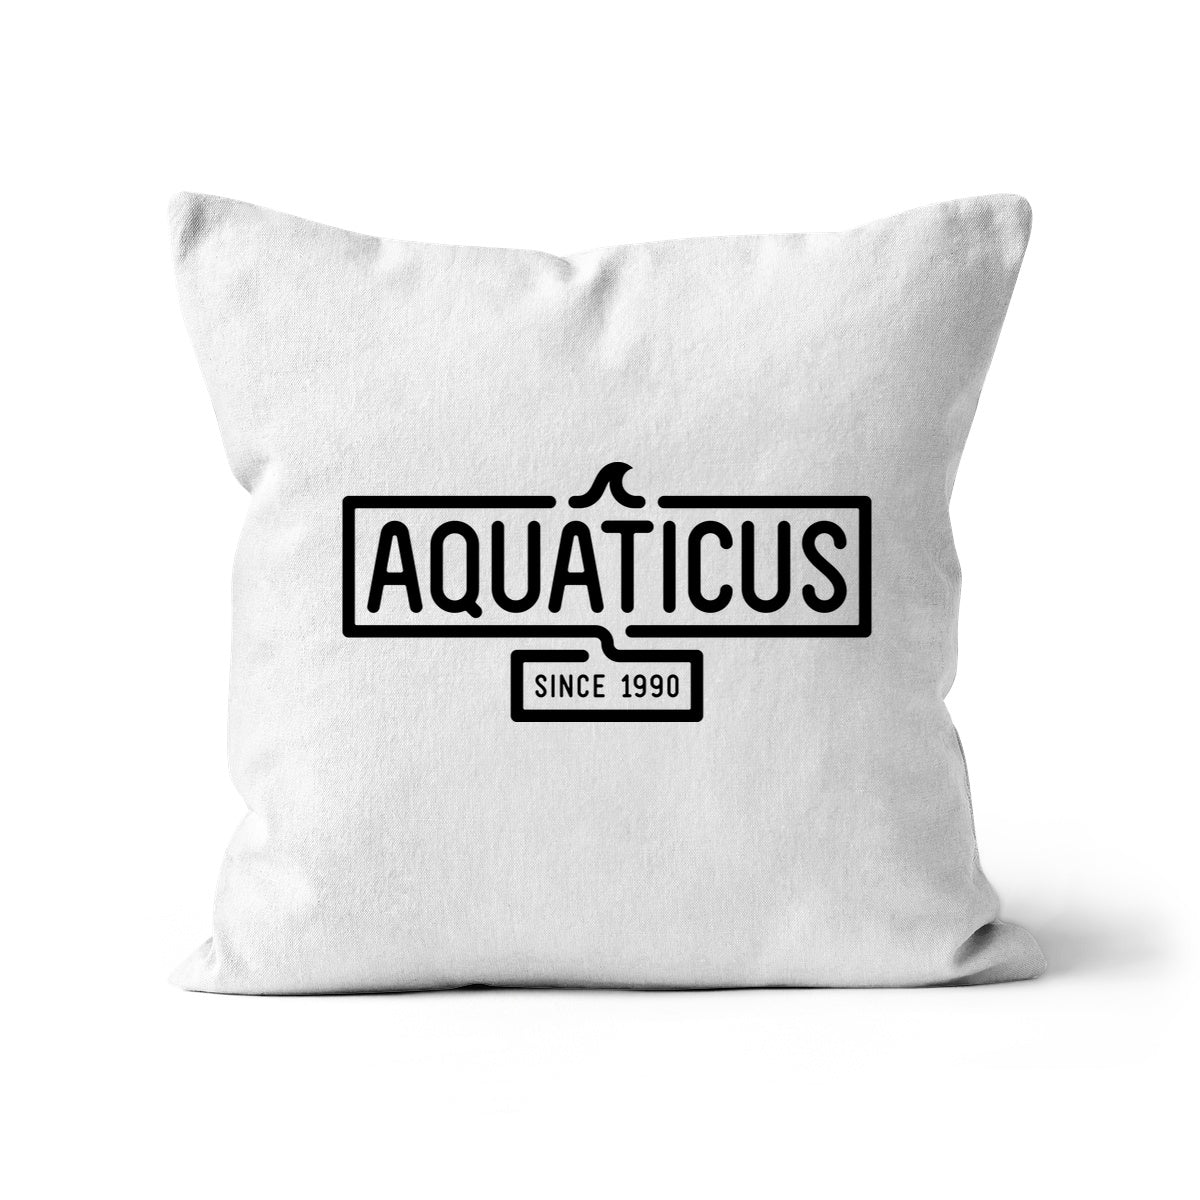 AQUA - 01- Aquaticus - Cushion